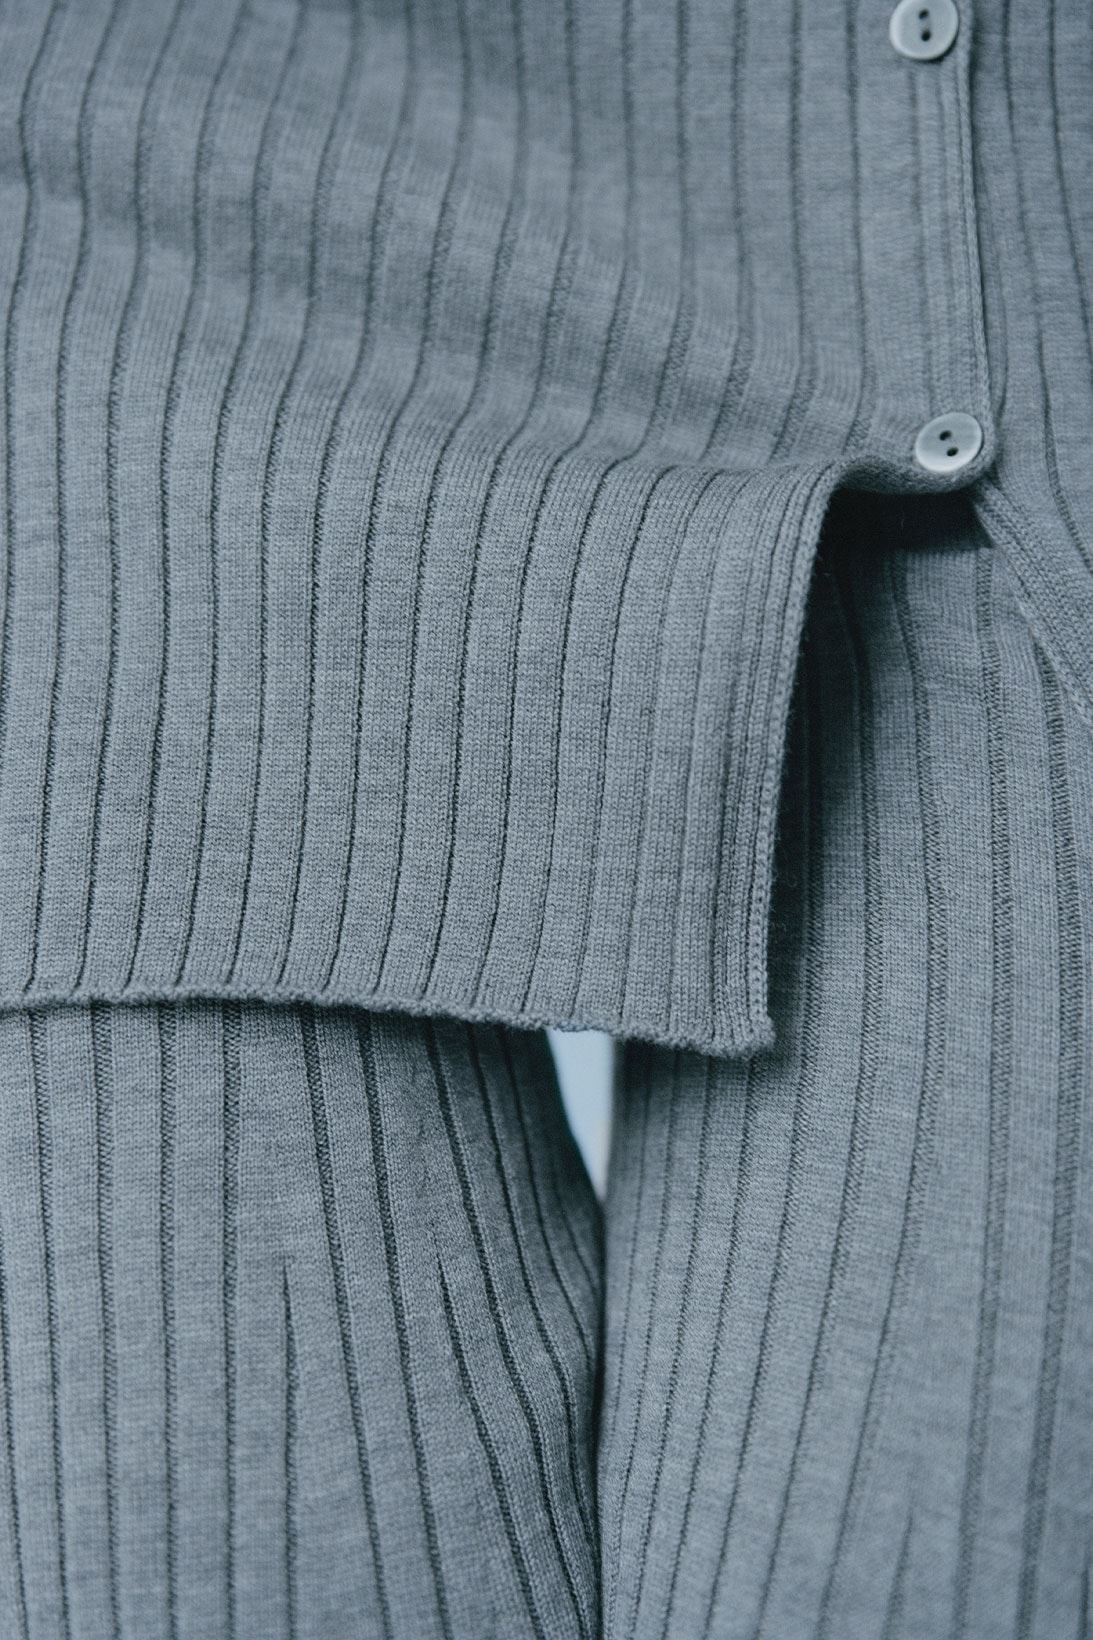 UNIQLO Mame Kurogouchi Collaboration Knit Closeup